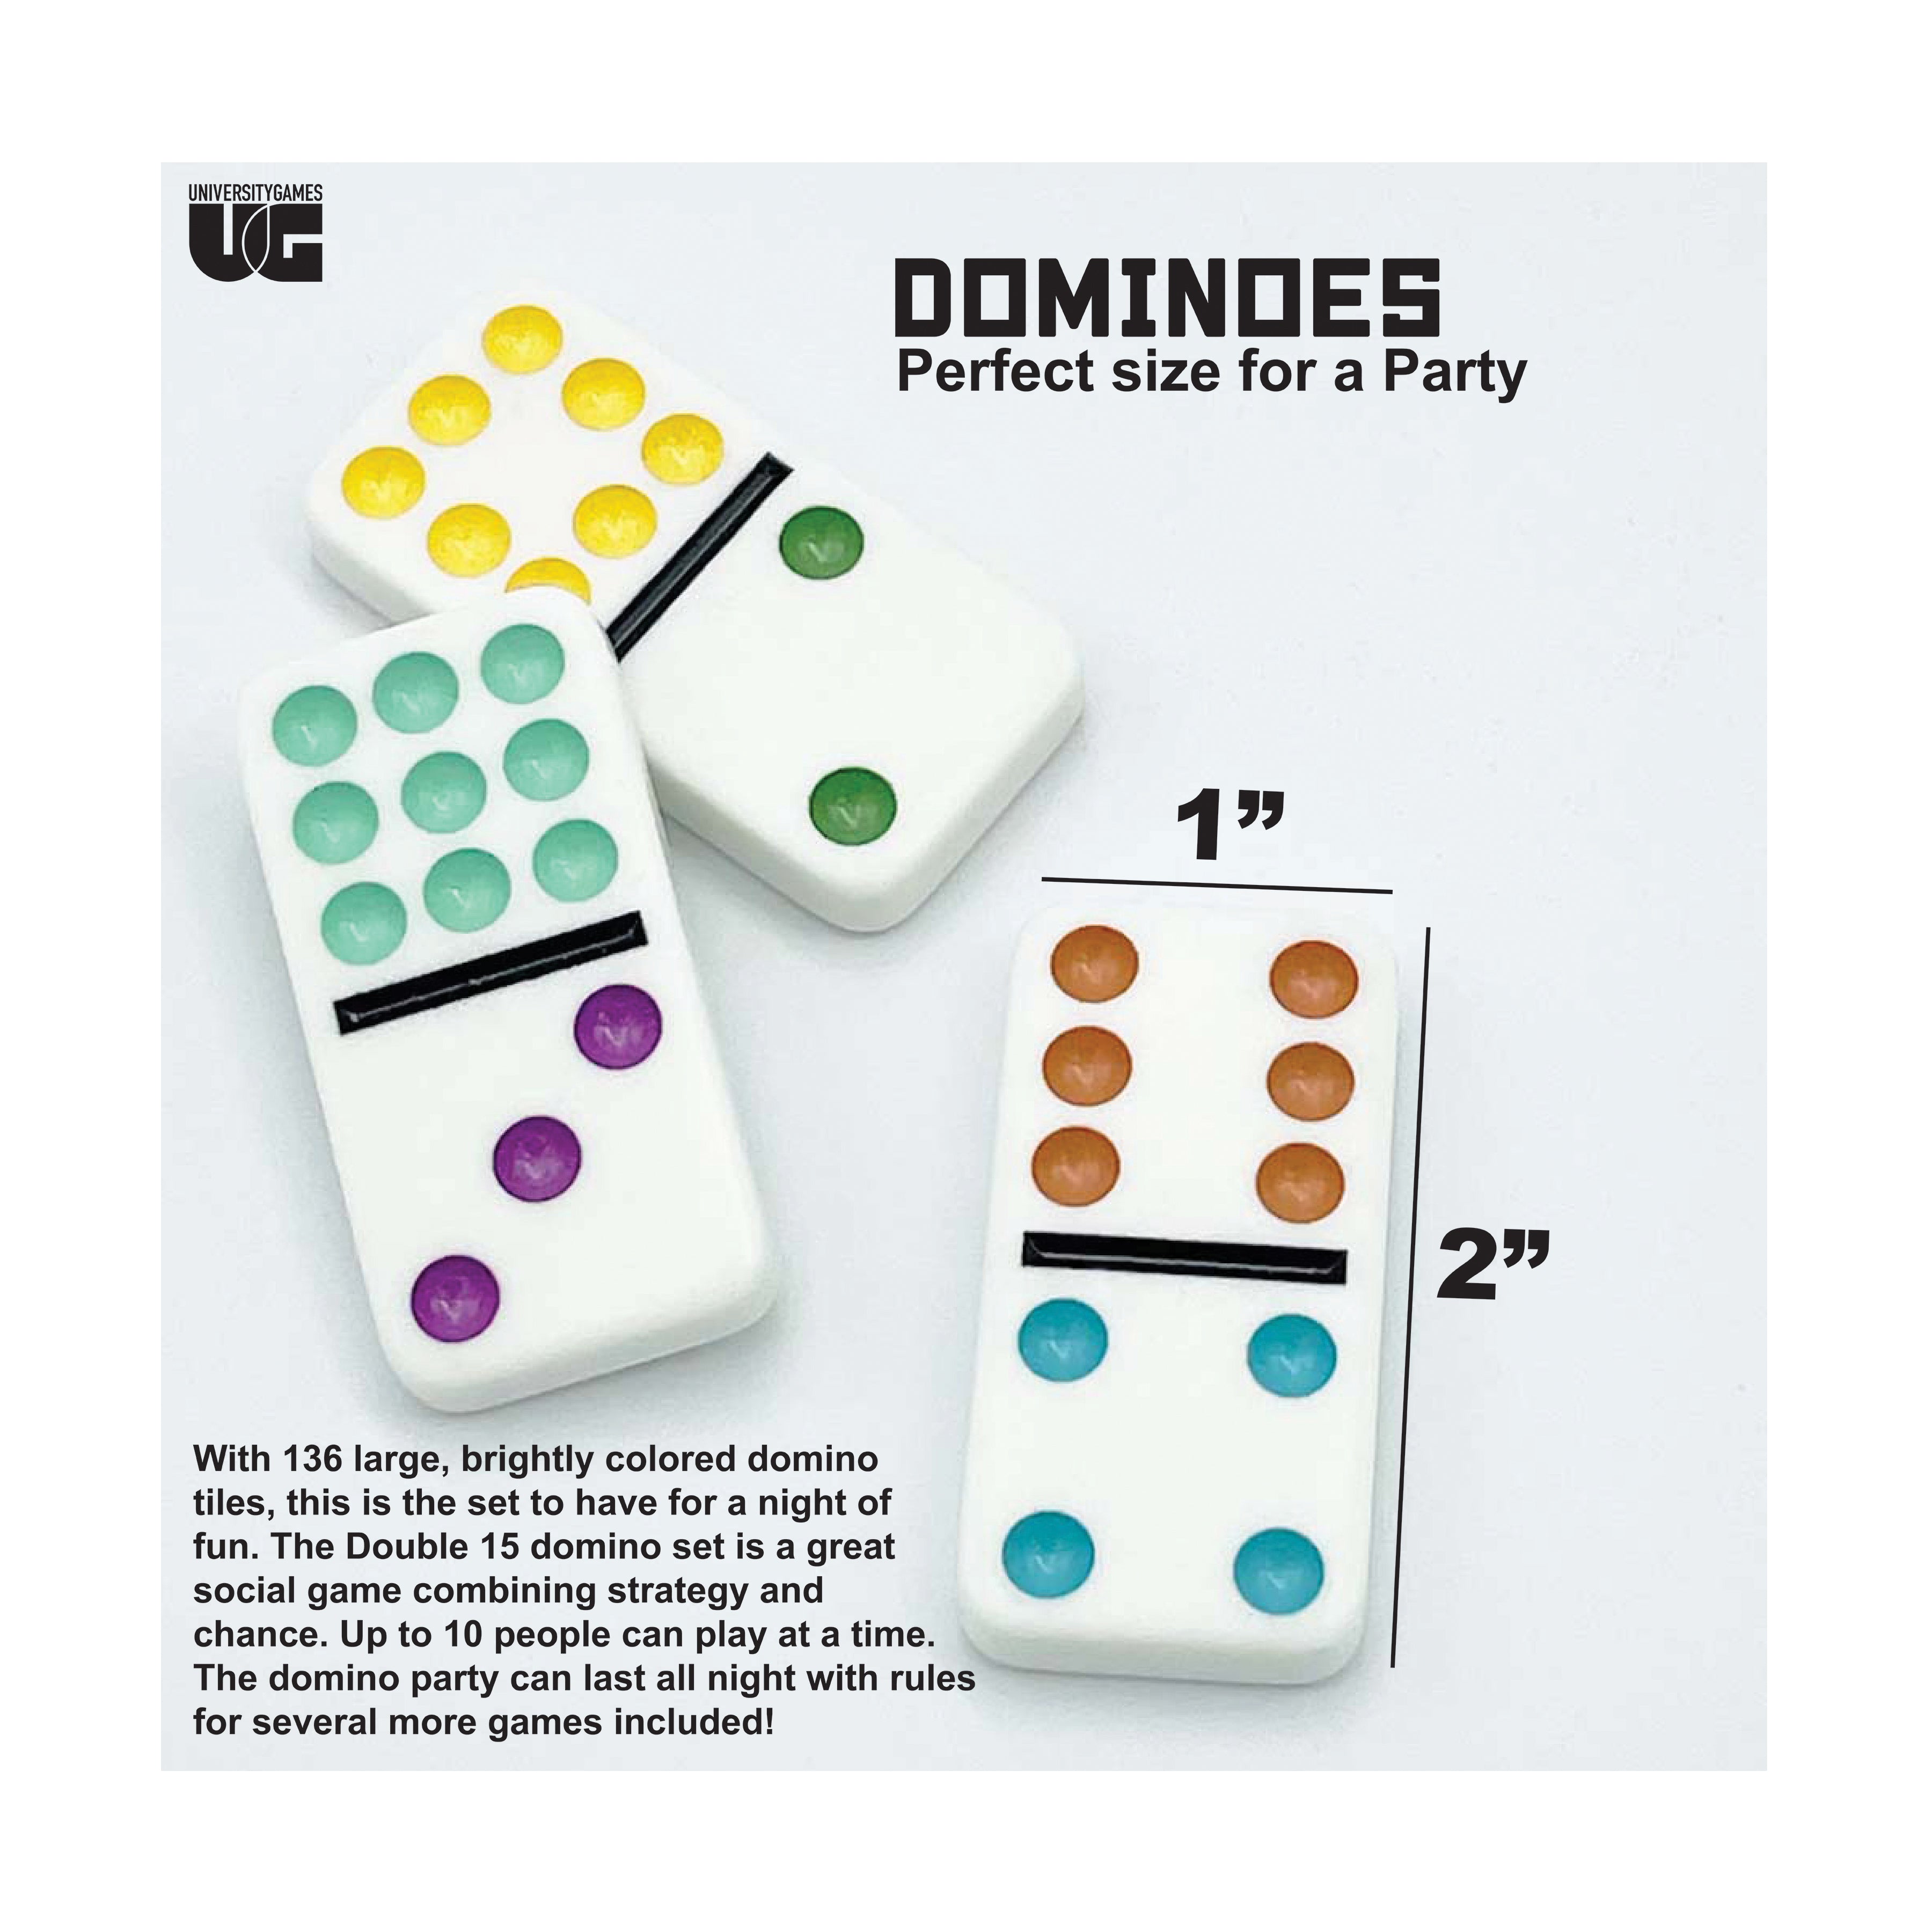 Kraan Fantastisch uitvinden Double 15 Party Dominoes | AreYouGame – AreYouGame.com